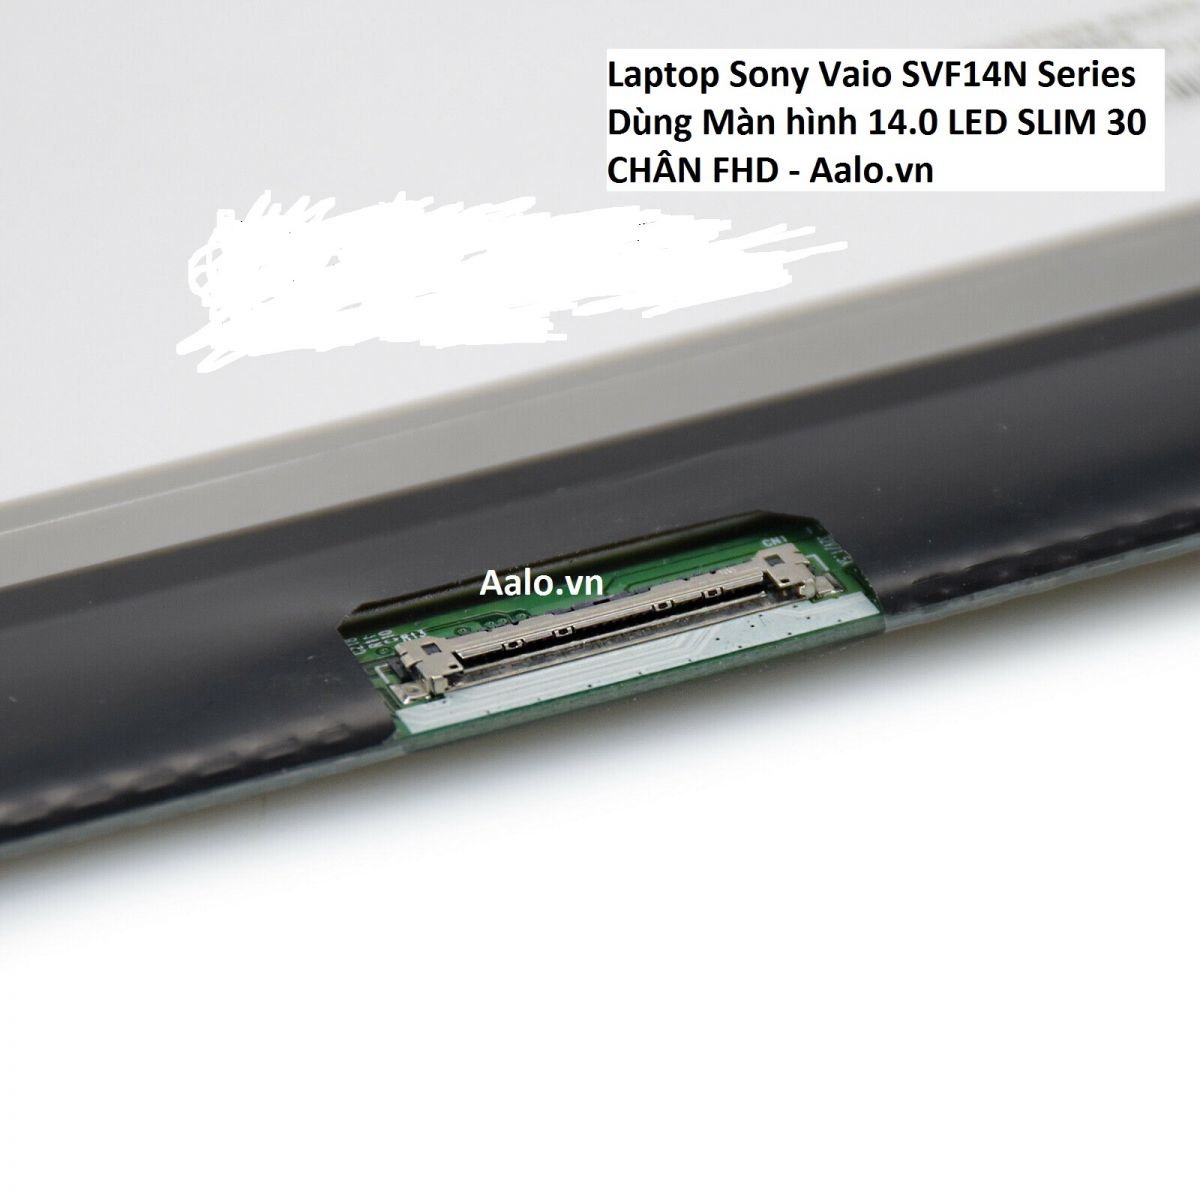 Màn hình Laptop Sony Vaio SVF14N Series - Aalo.vn